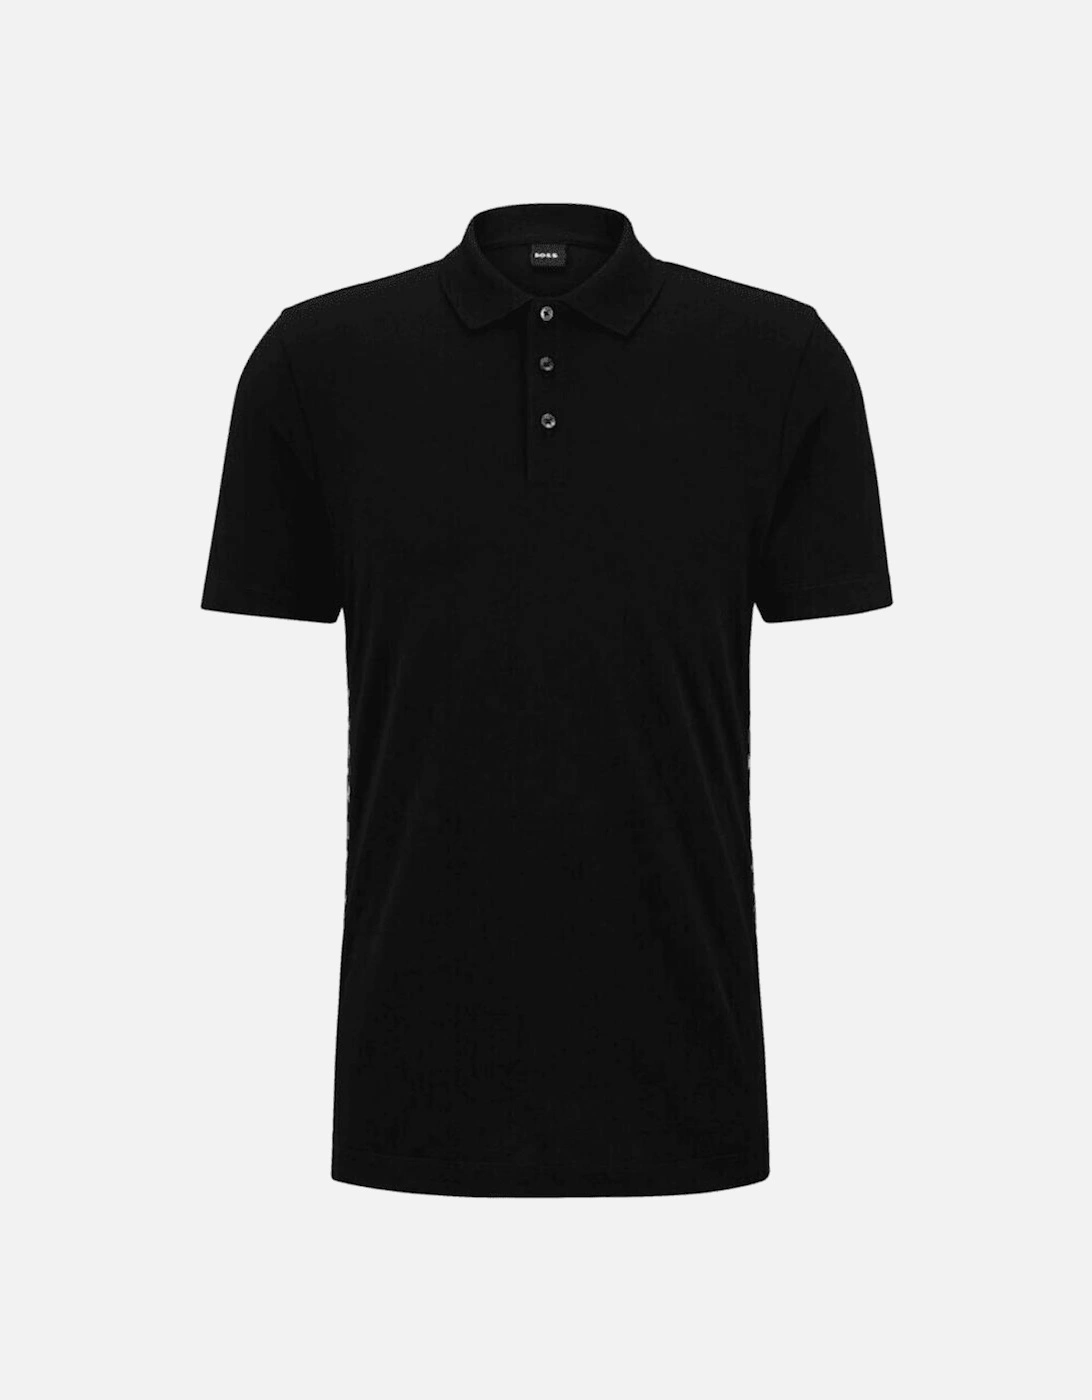 Parlay 184 Pique Cotton Black Polo Shirt, 4 of 3